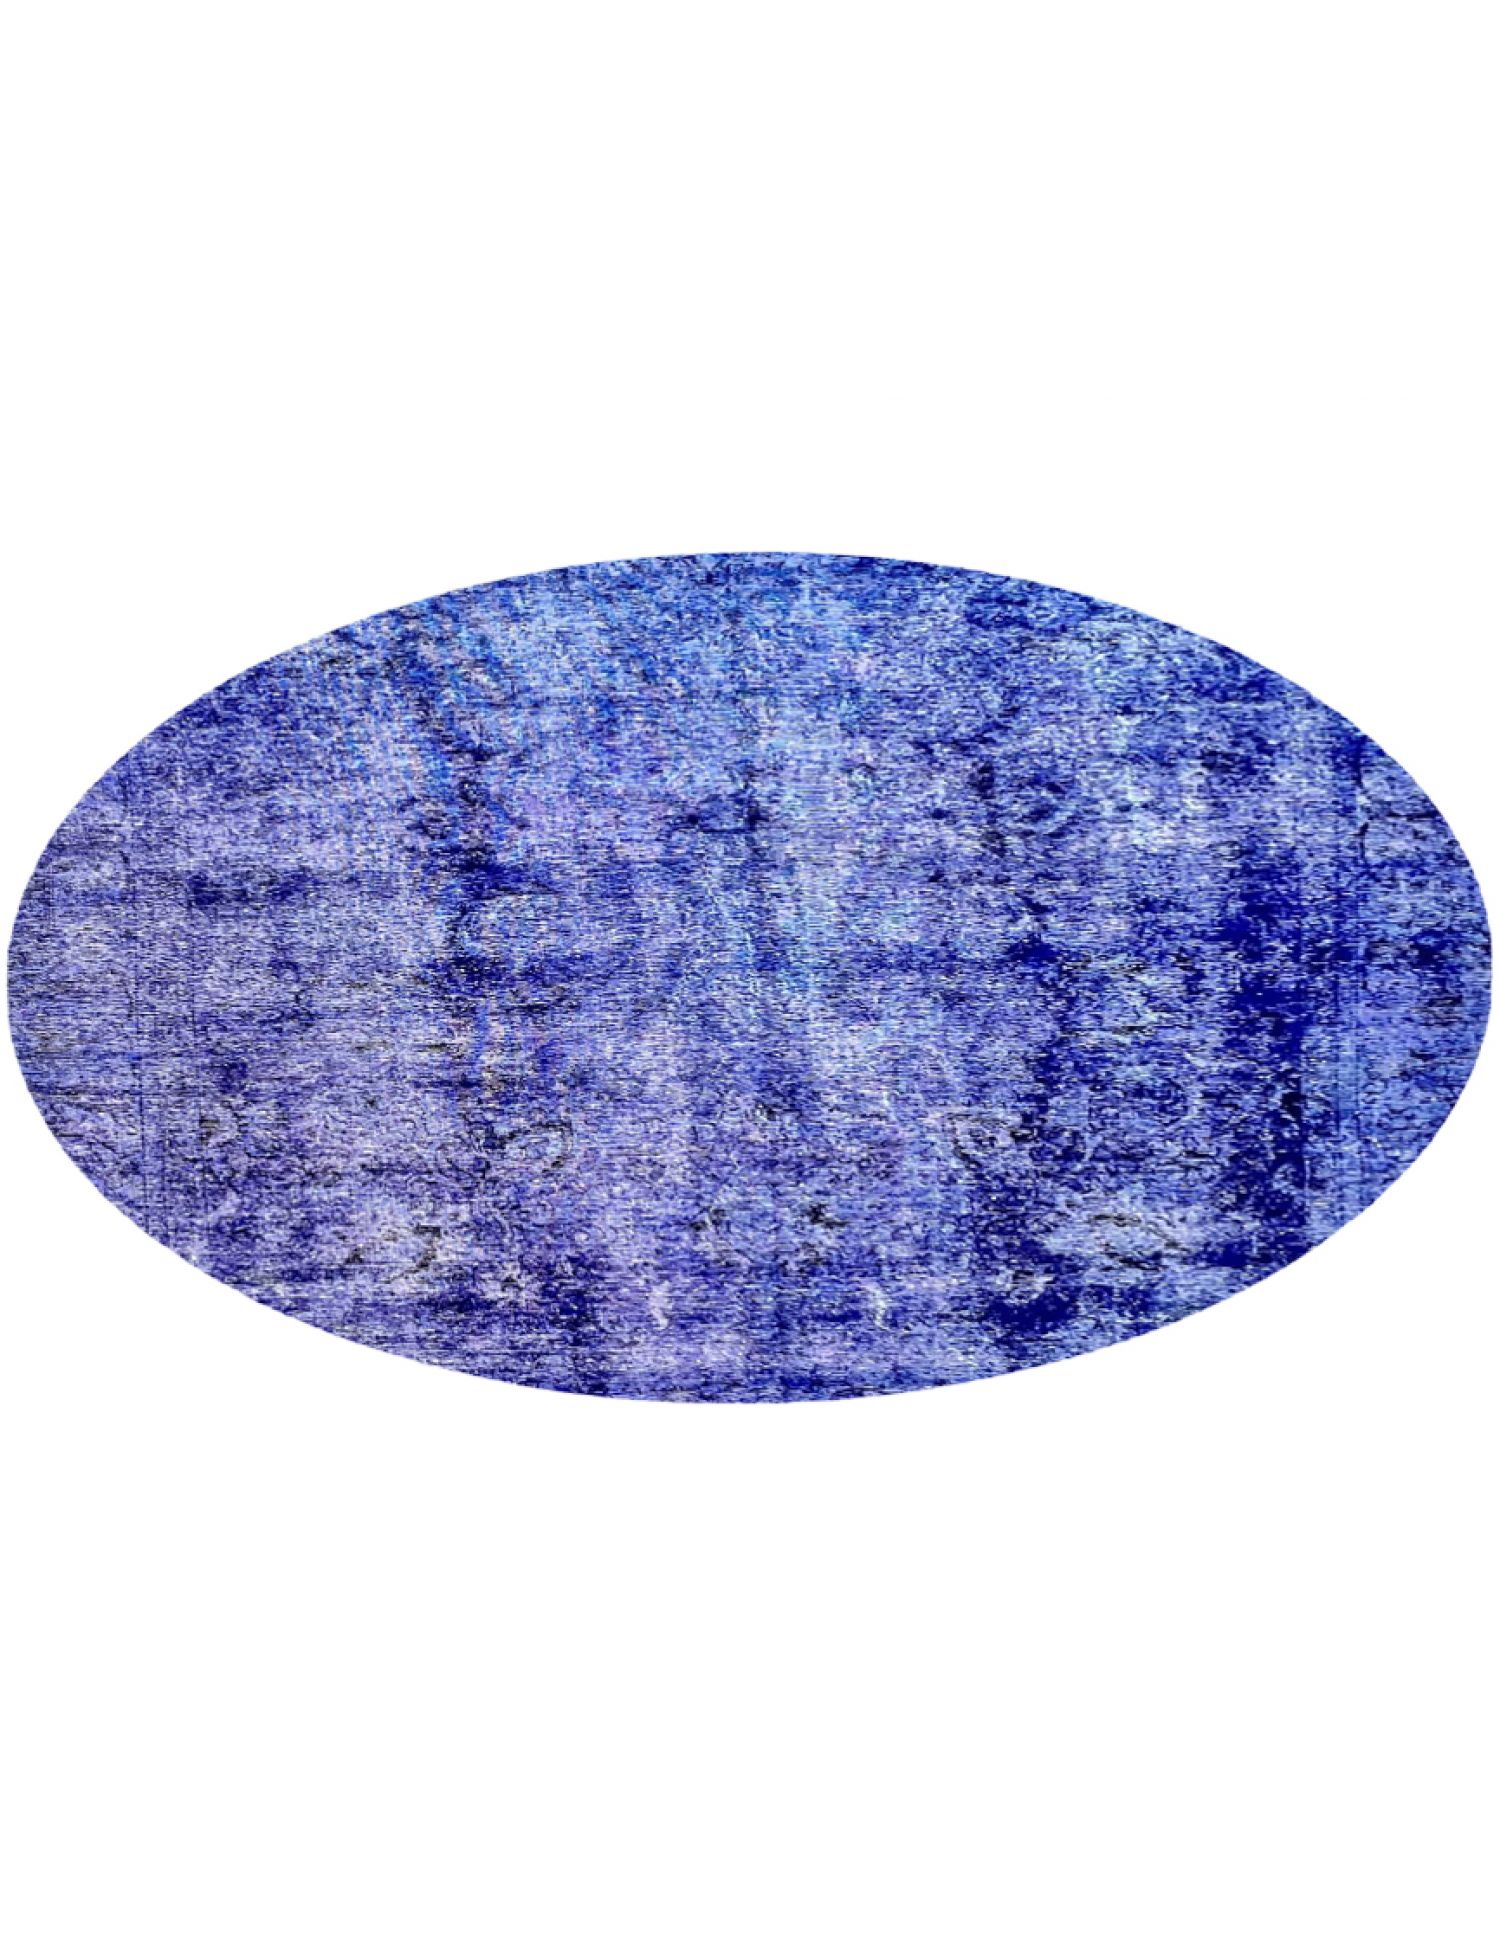 Vintage Teppich  blau <br/>275 x 275 cm